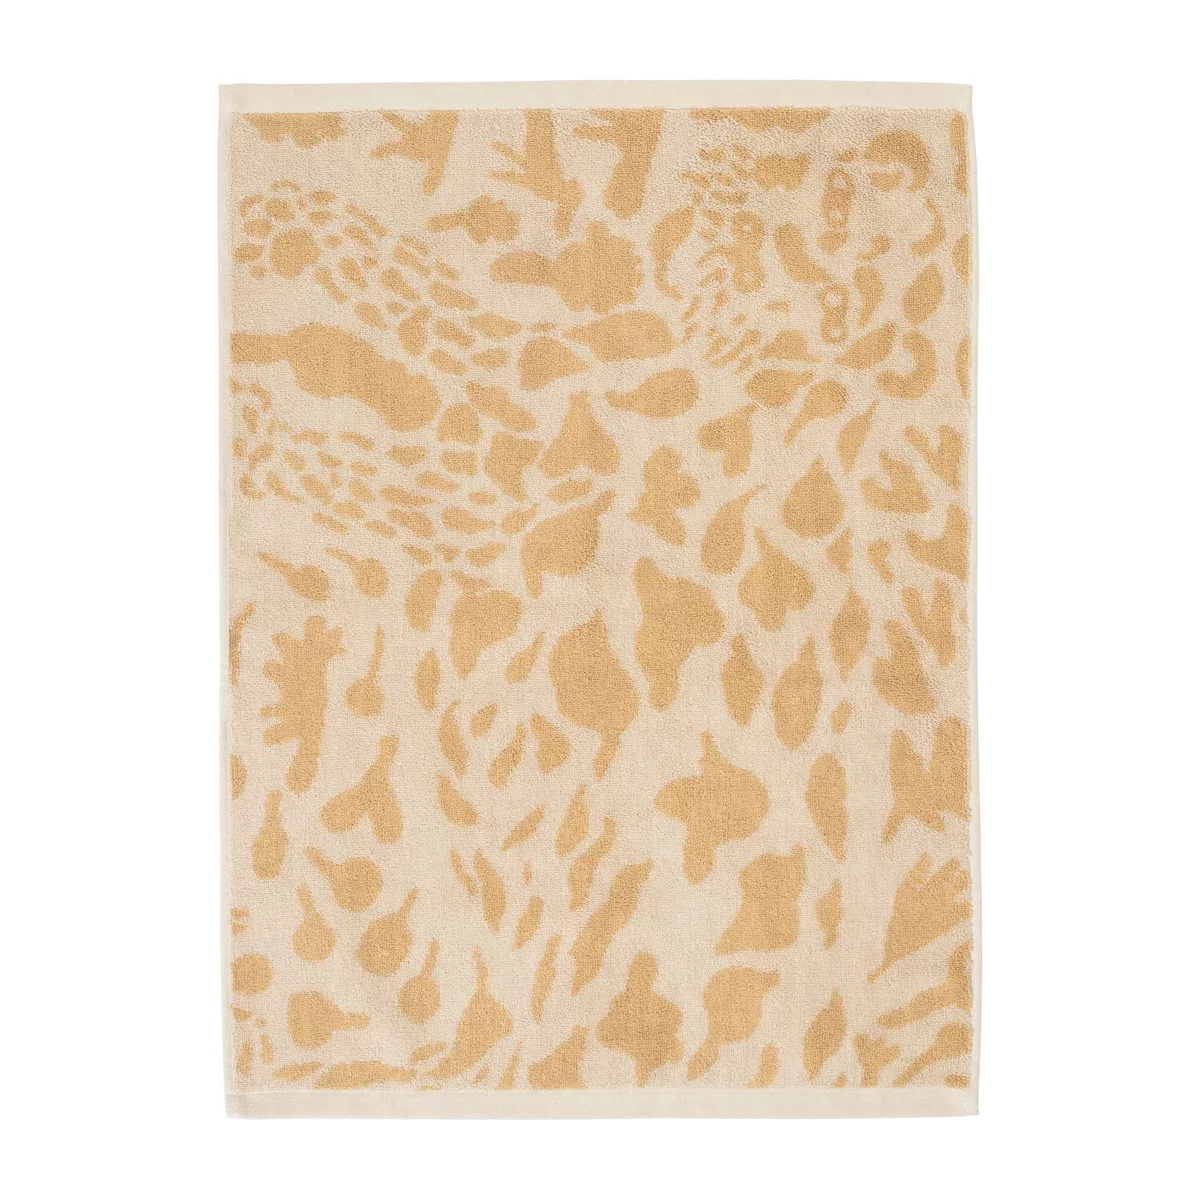 Oiva Toikka Cheetah Handtuch 50 x 70cm braun günstig online kaufen